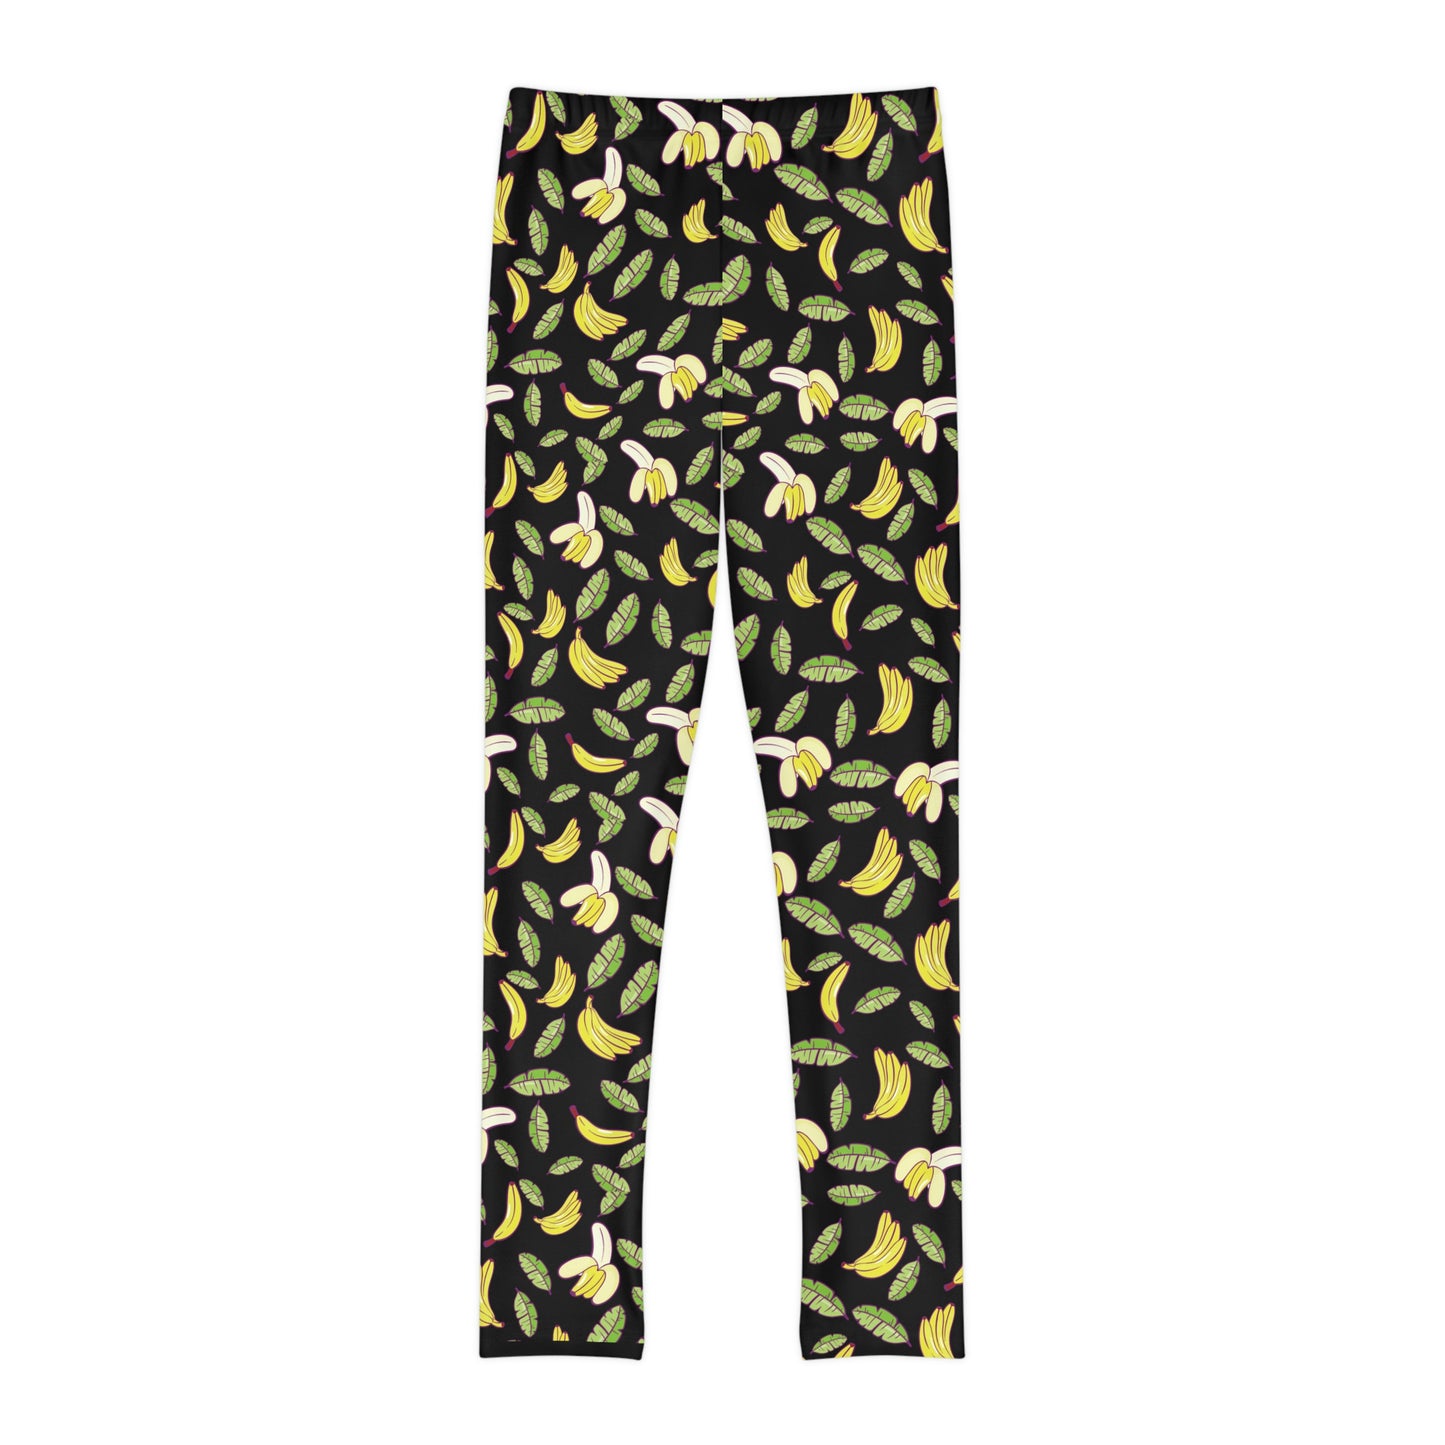 Bananas Print, Fruit Print Youth Full-Length Leggings, tiger look leggings, Acrobatics pants , Yoga spandex